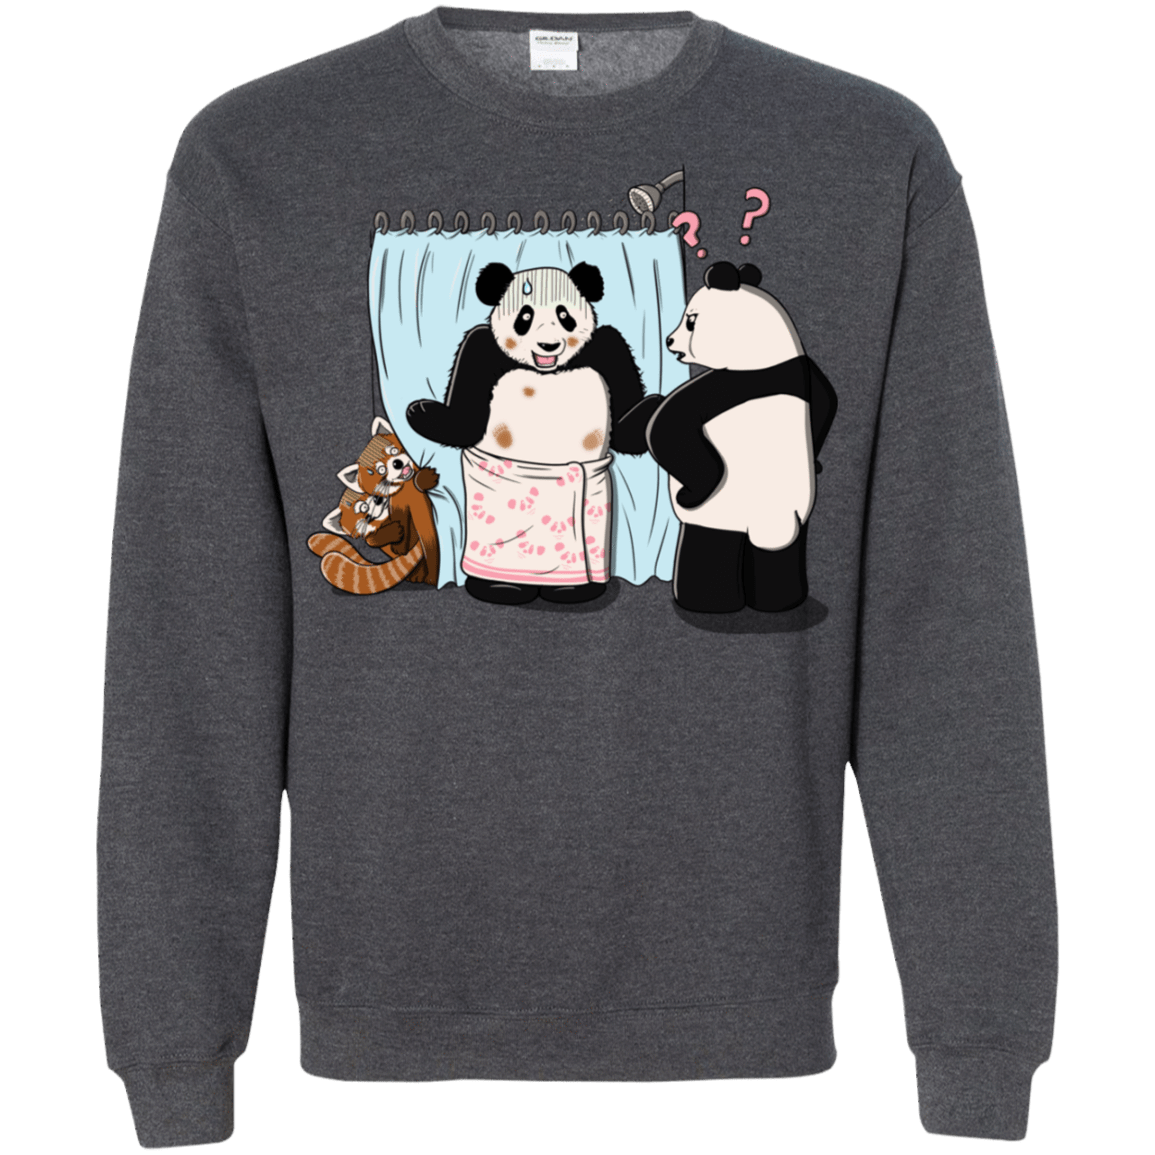 Sweatshirts Dark Heather / S Panda Infidelity Crewneck Sweatshirt